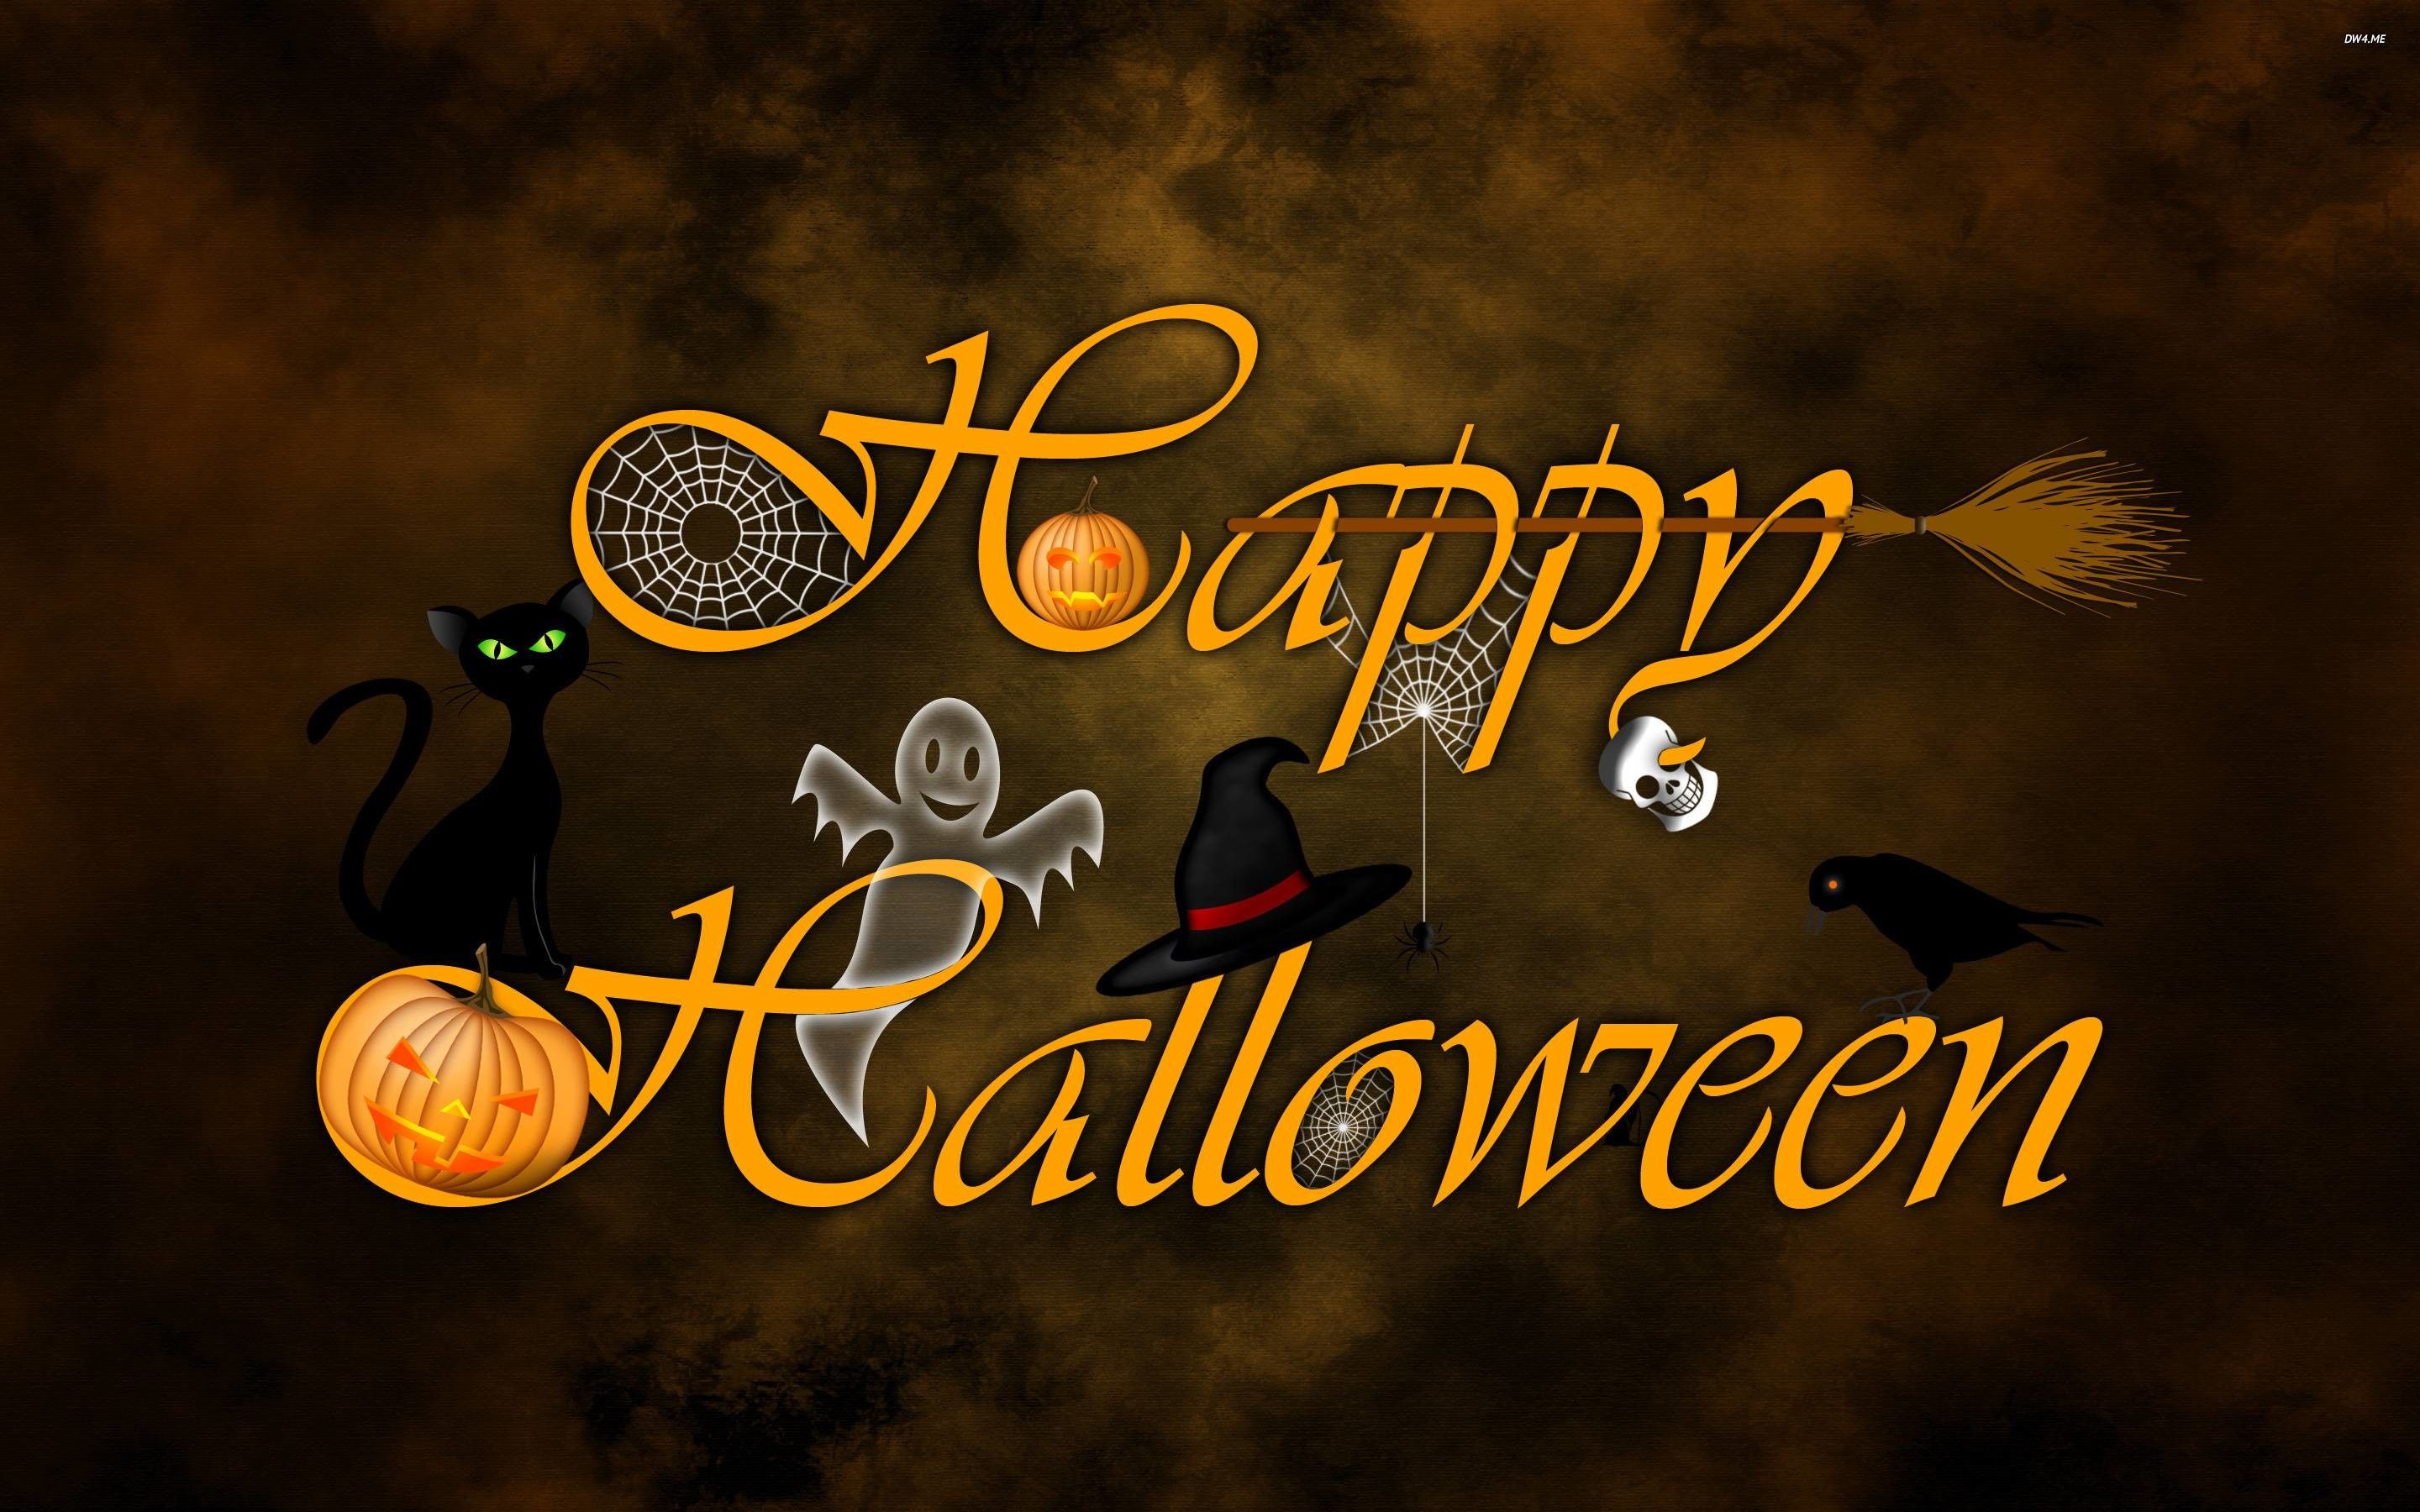 Widescreen Halloween desktop wallpaper 2880×1800 Wallpaper Download Resolution 4K. Happy halloween picture, Halloween wishes, Halloween desktop wallpaper